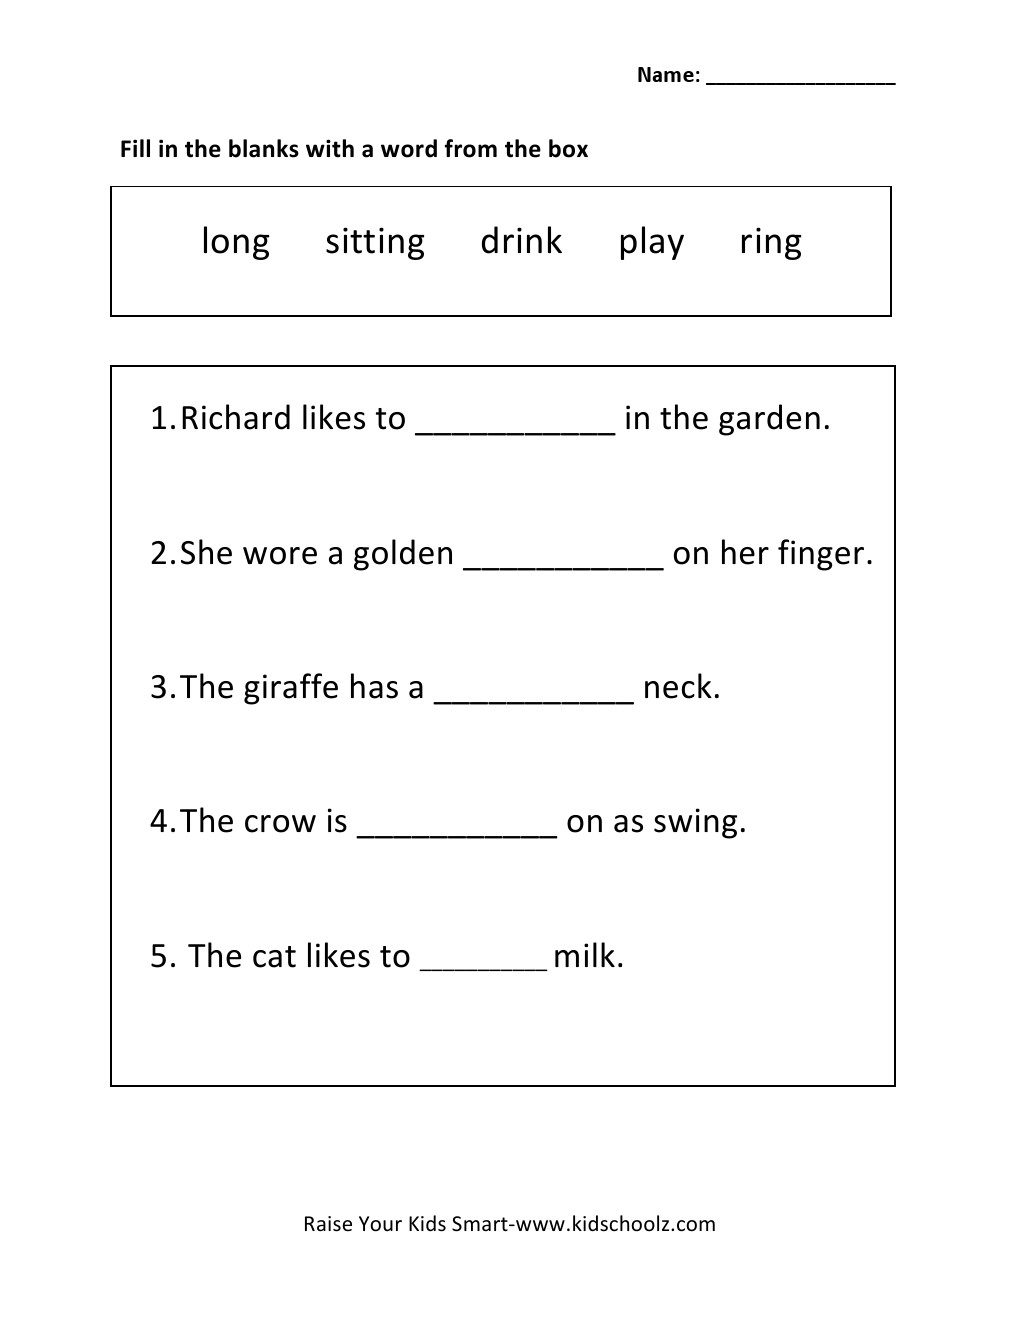 sentence-completion-worksheets-humorholics